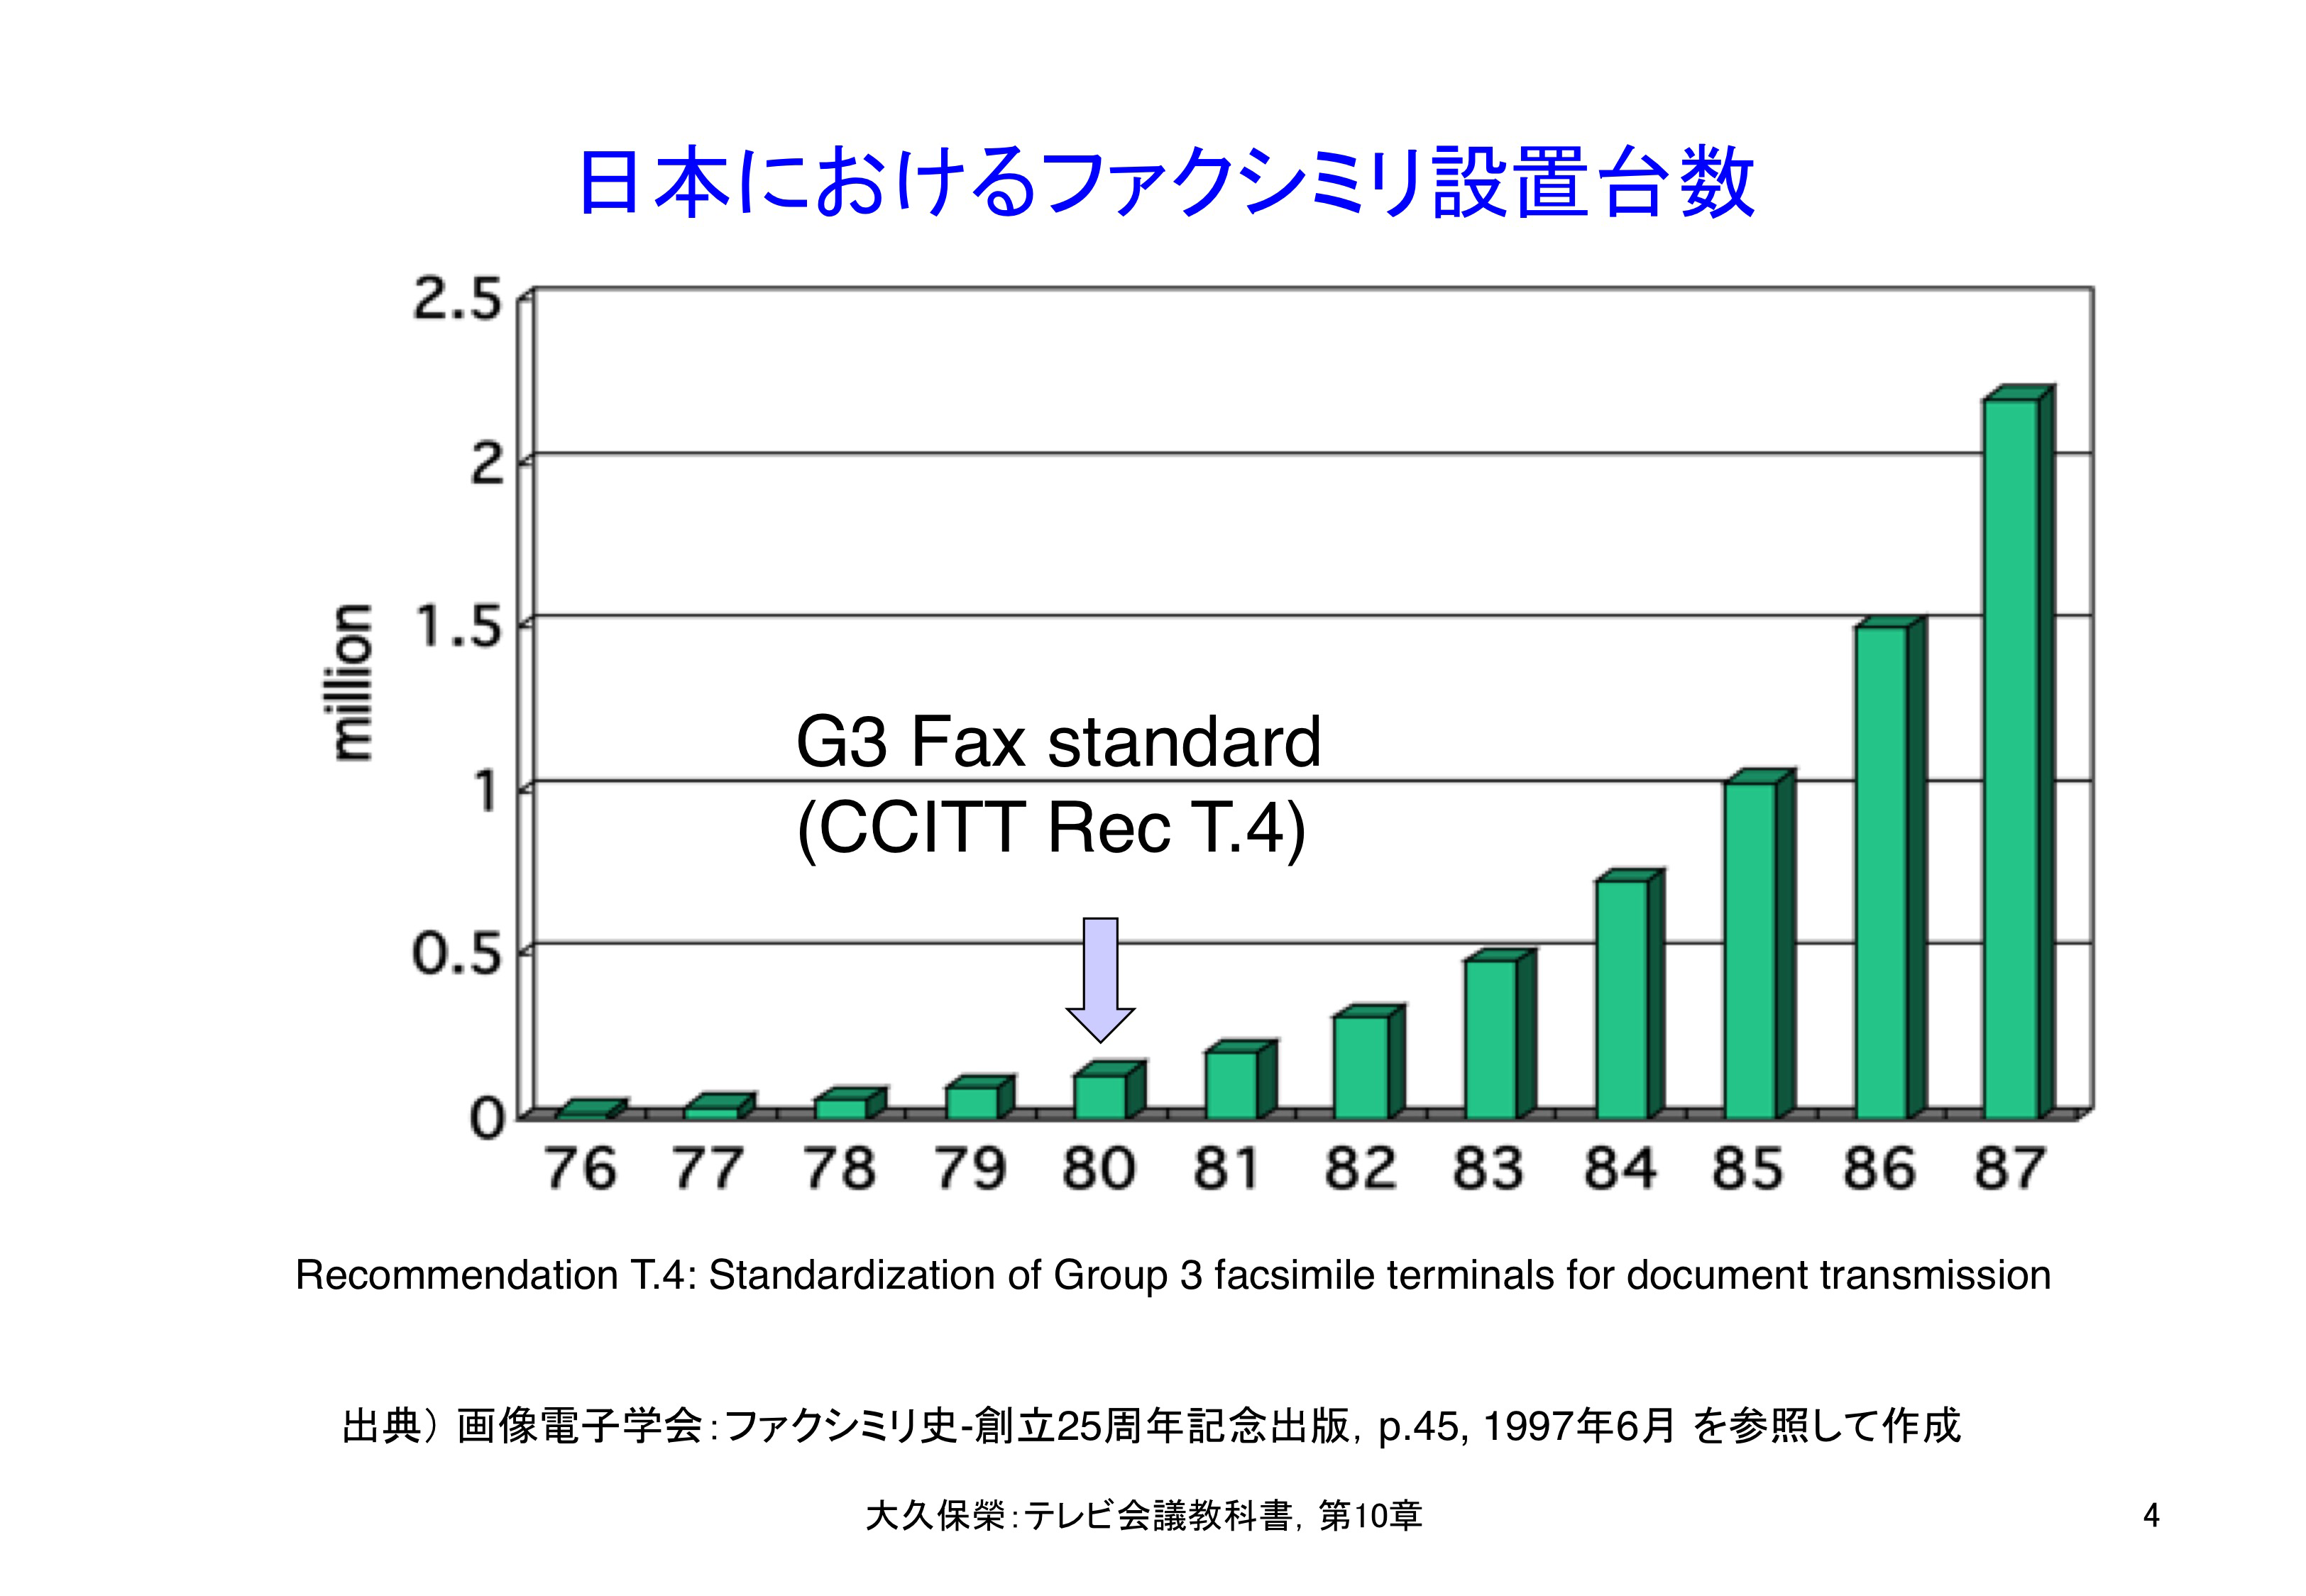 図10-4 日本におけるファクシミリの設置台数